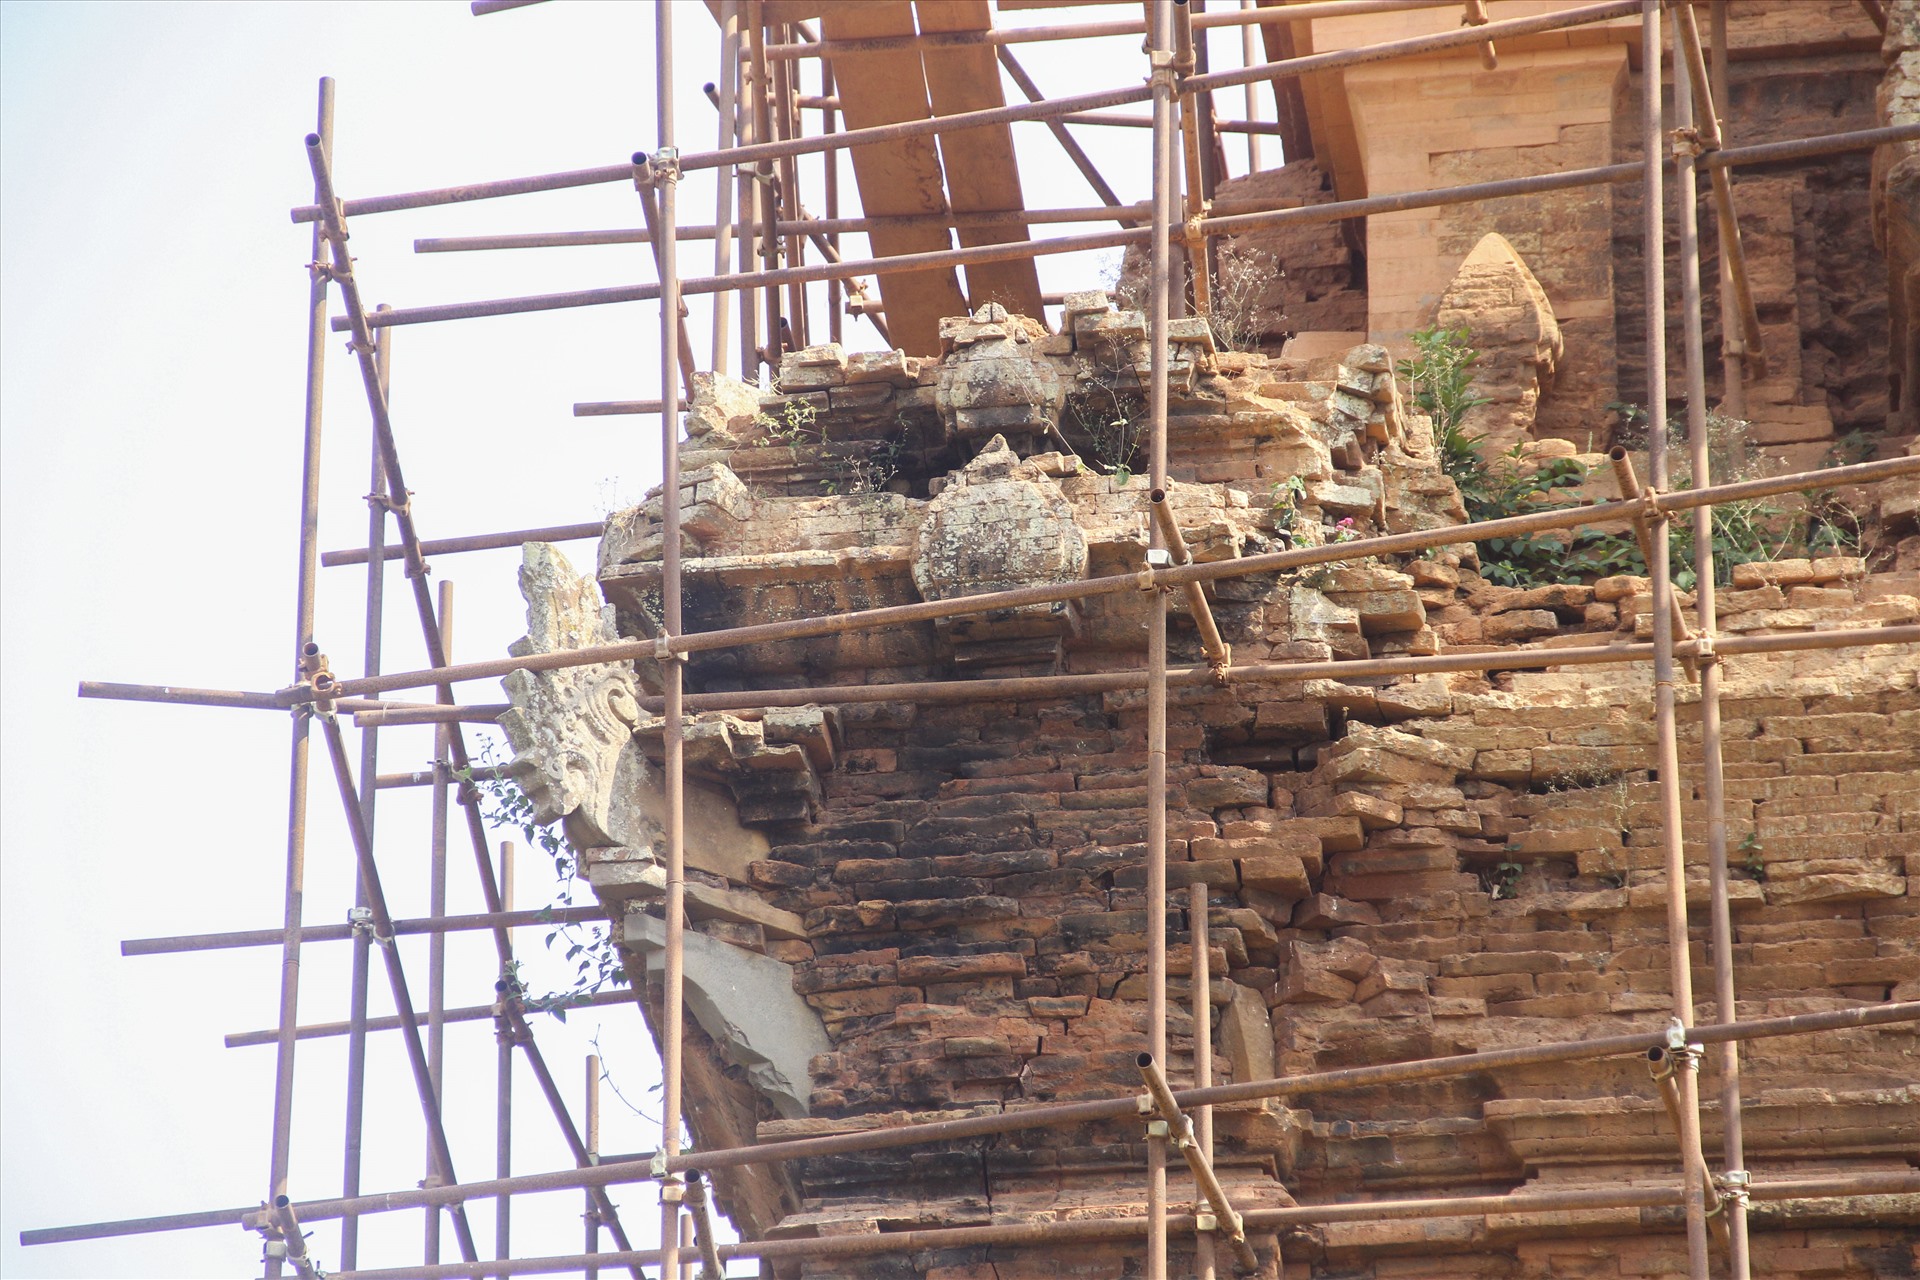 Hiện nay, cấu trúc tháp đã bị hư hỏng nhiều, nhất là phần mái tháp đã bị sạt lở, hư hại nặng nề, gạch xây nhiều chỗ đã mất liên kết; phần mái trên đã bị sụp mất từ lâu.